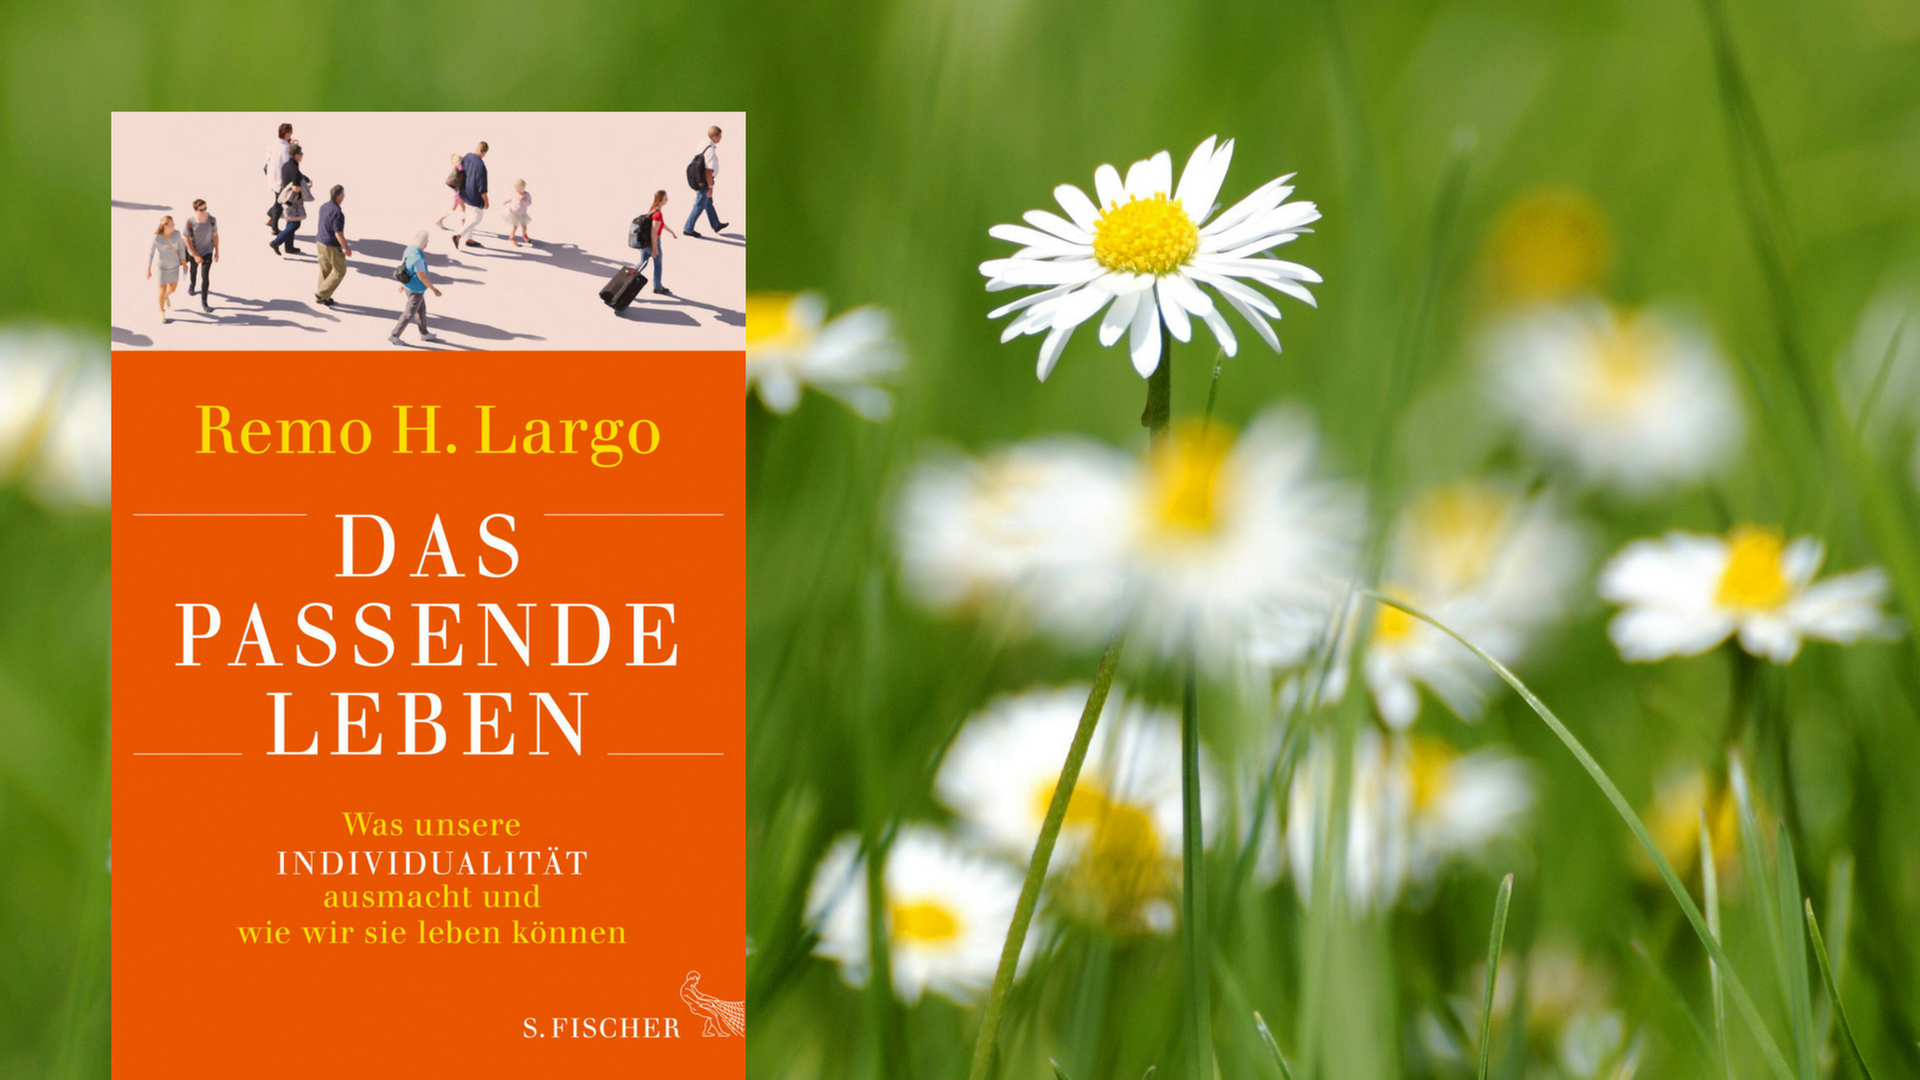 Remo H. Largos Buch "Das passende Leben". Im Hintergrund: Gänseblümchen.